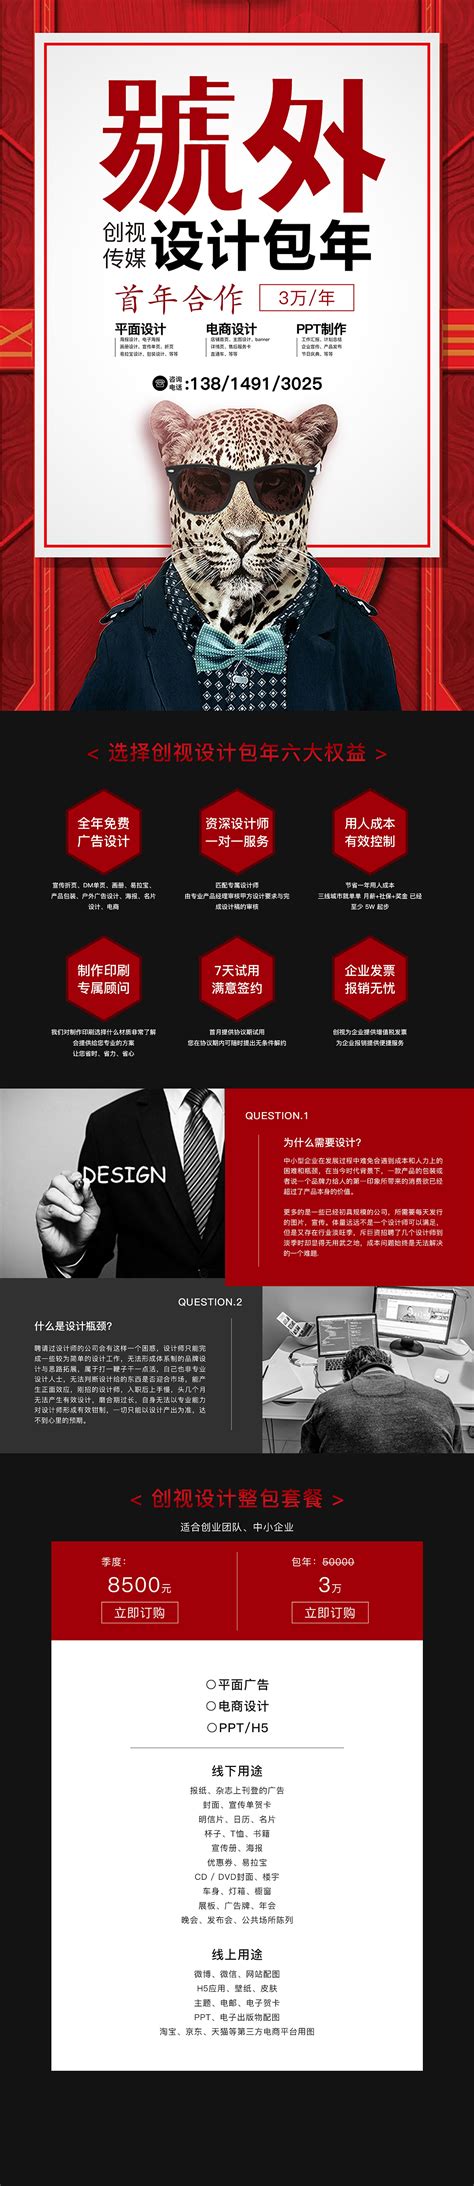 平面设计外包公司_广告设计外包公司,选择专业的广州设计公司